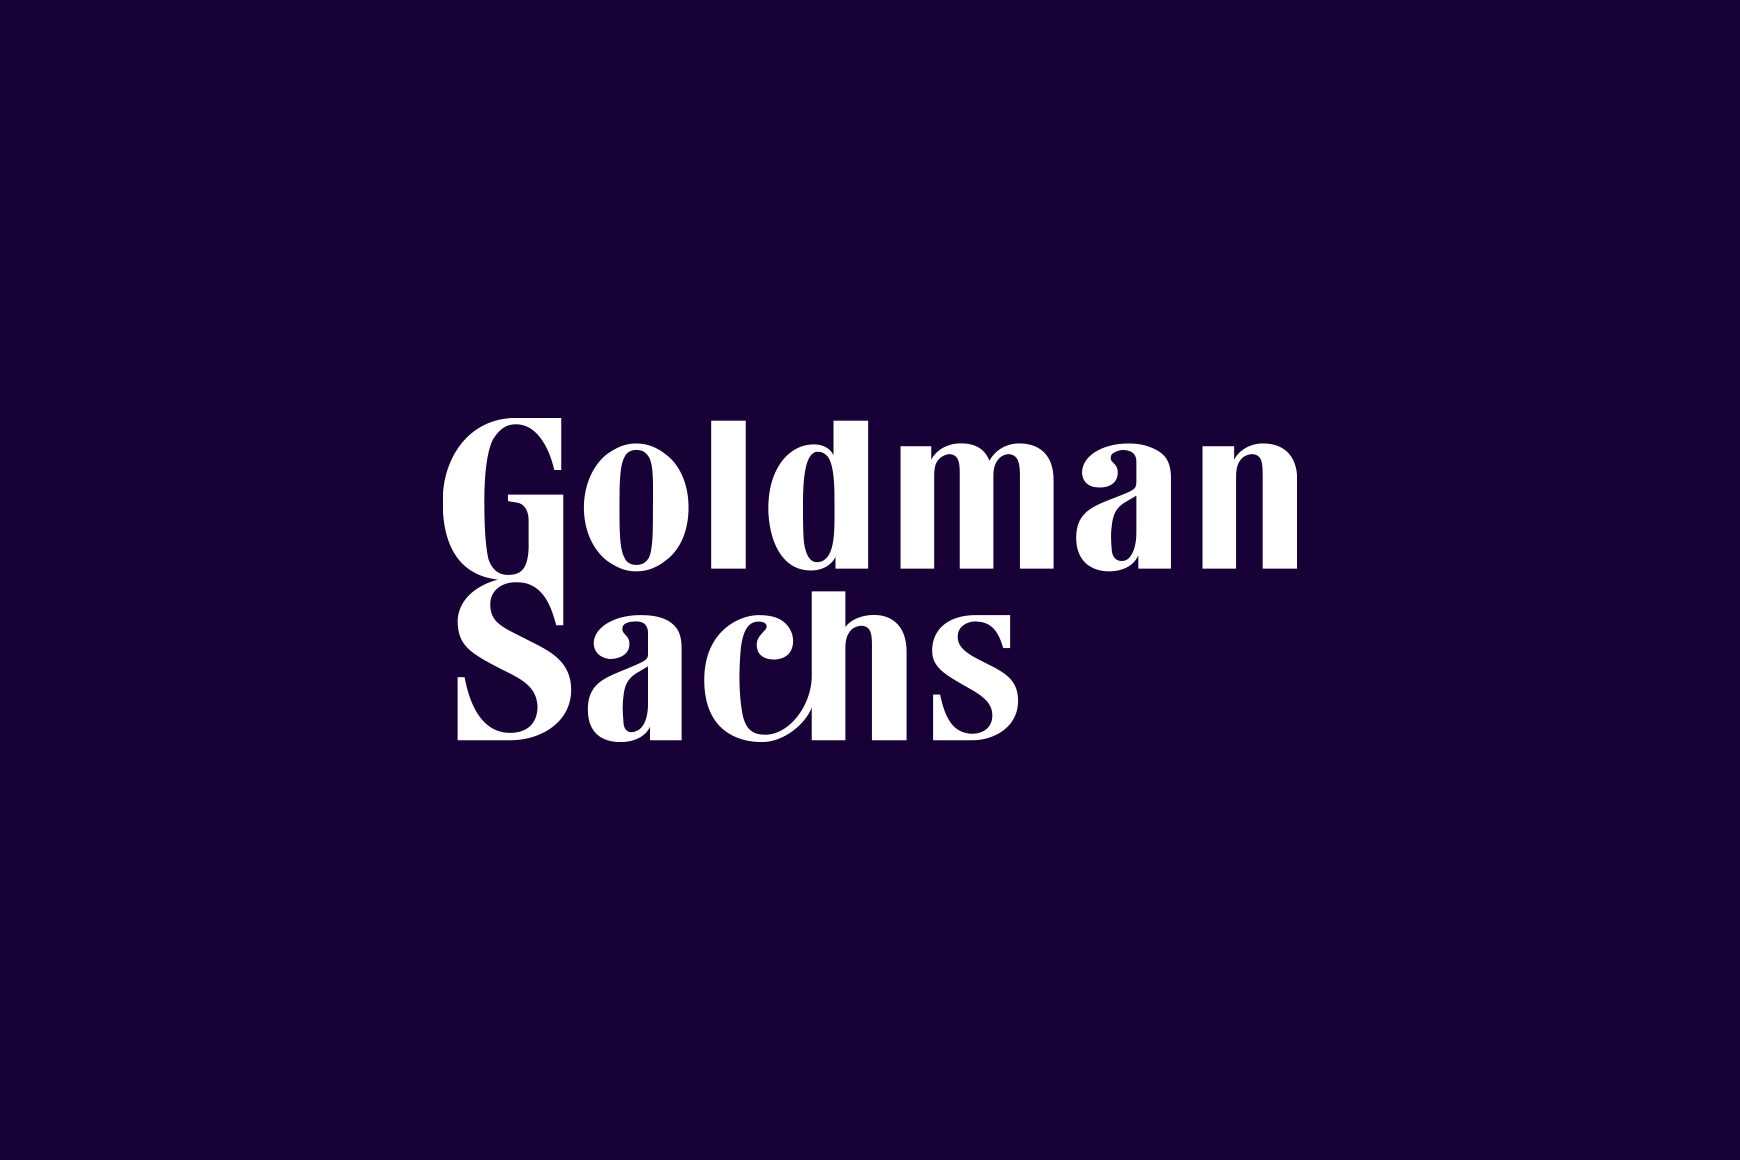 Talkdesk Honored by Goldman Sachs for Entrepreneurship